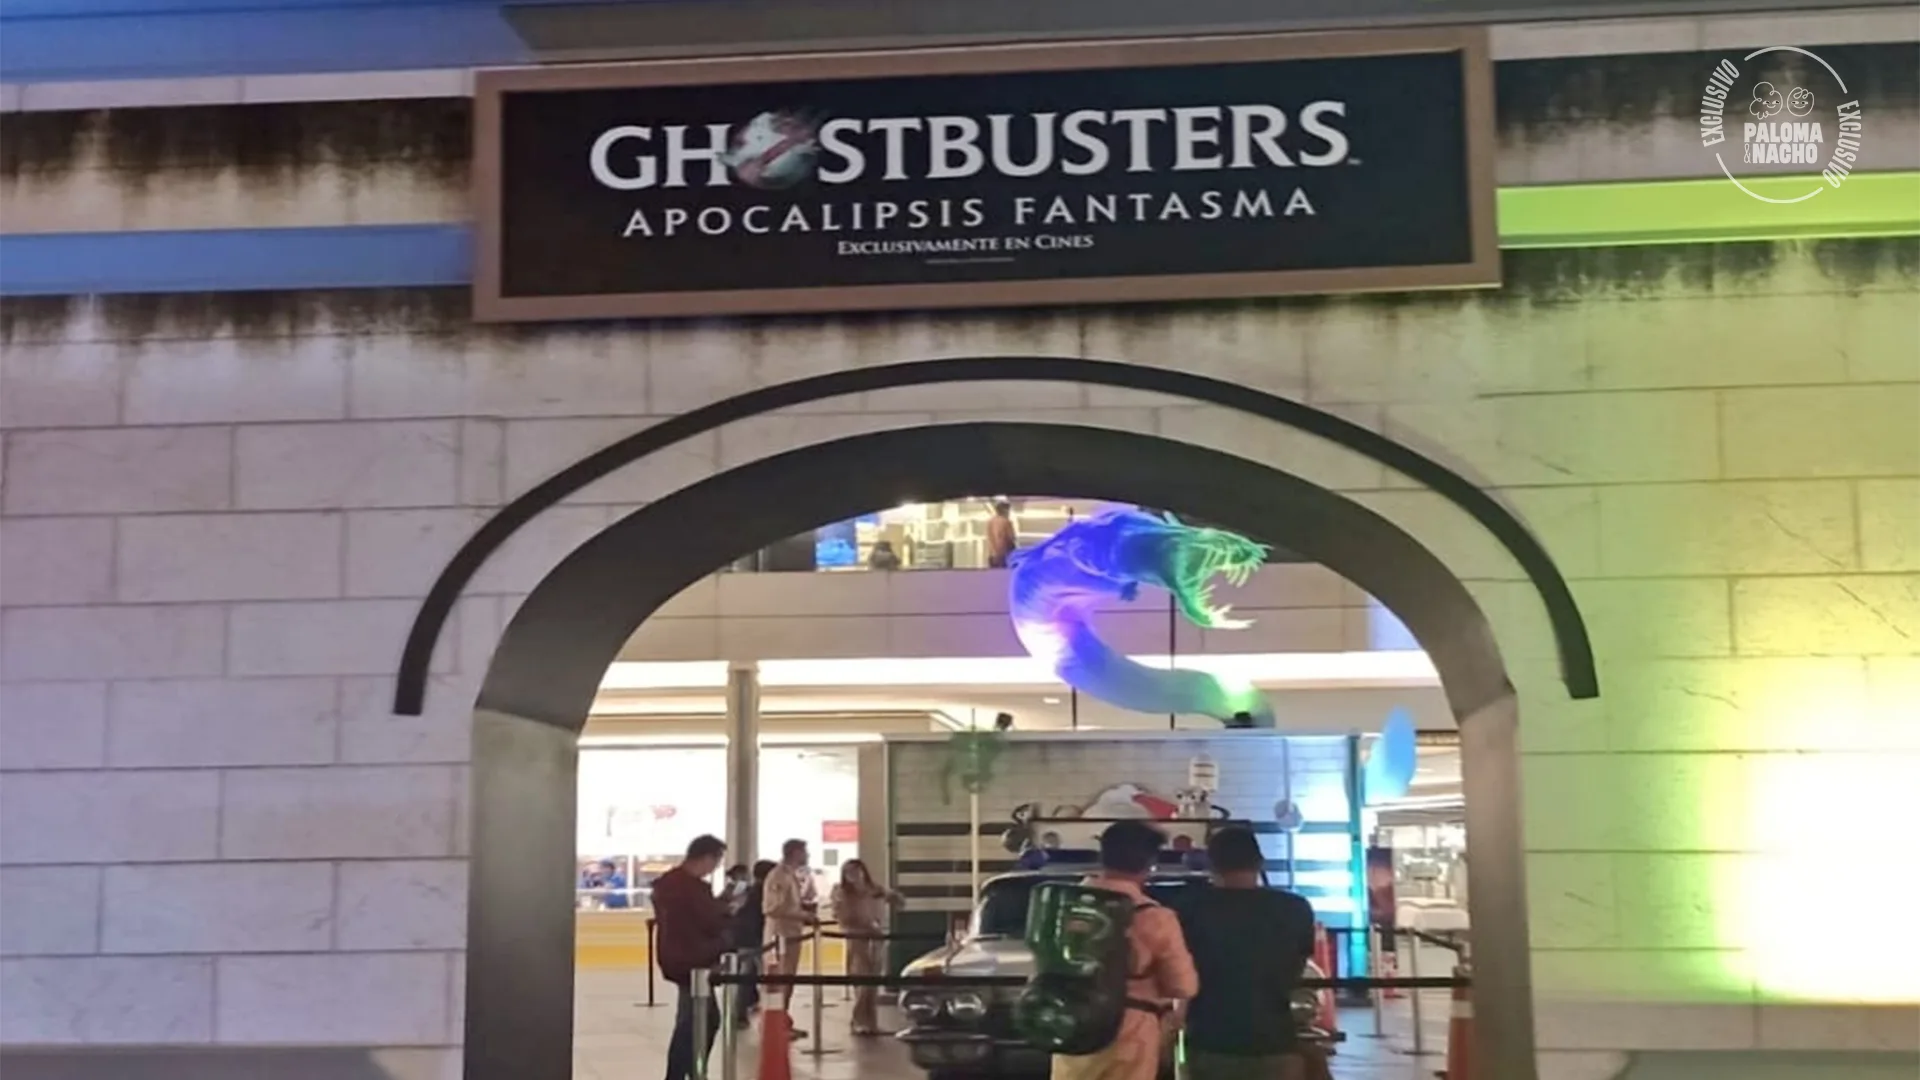 Ghostbusters: Apocalipsis fantasma premiere Ciudad de México